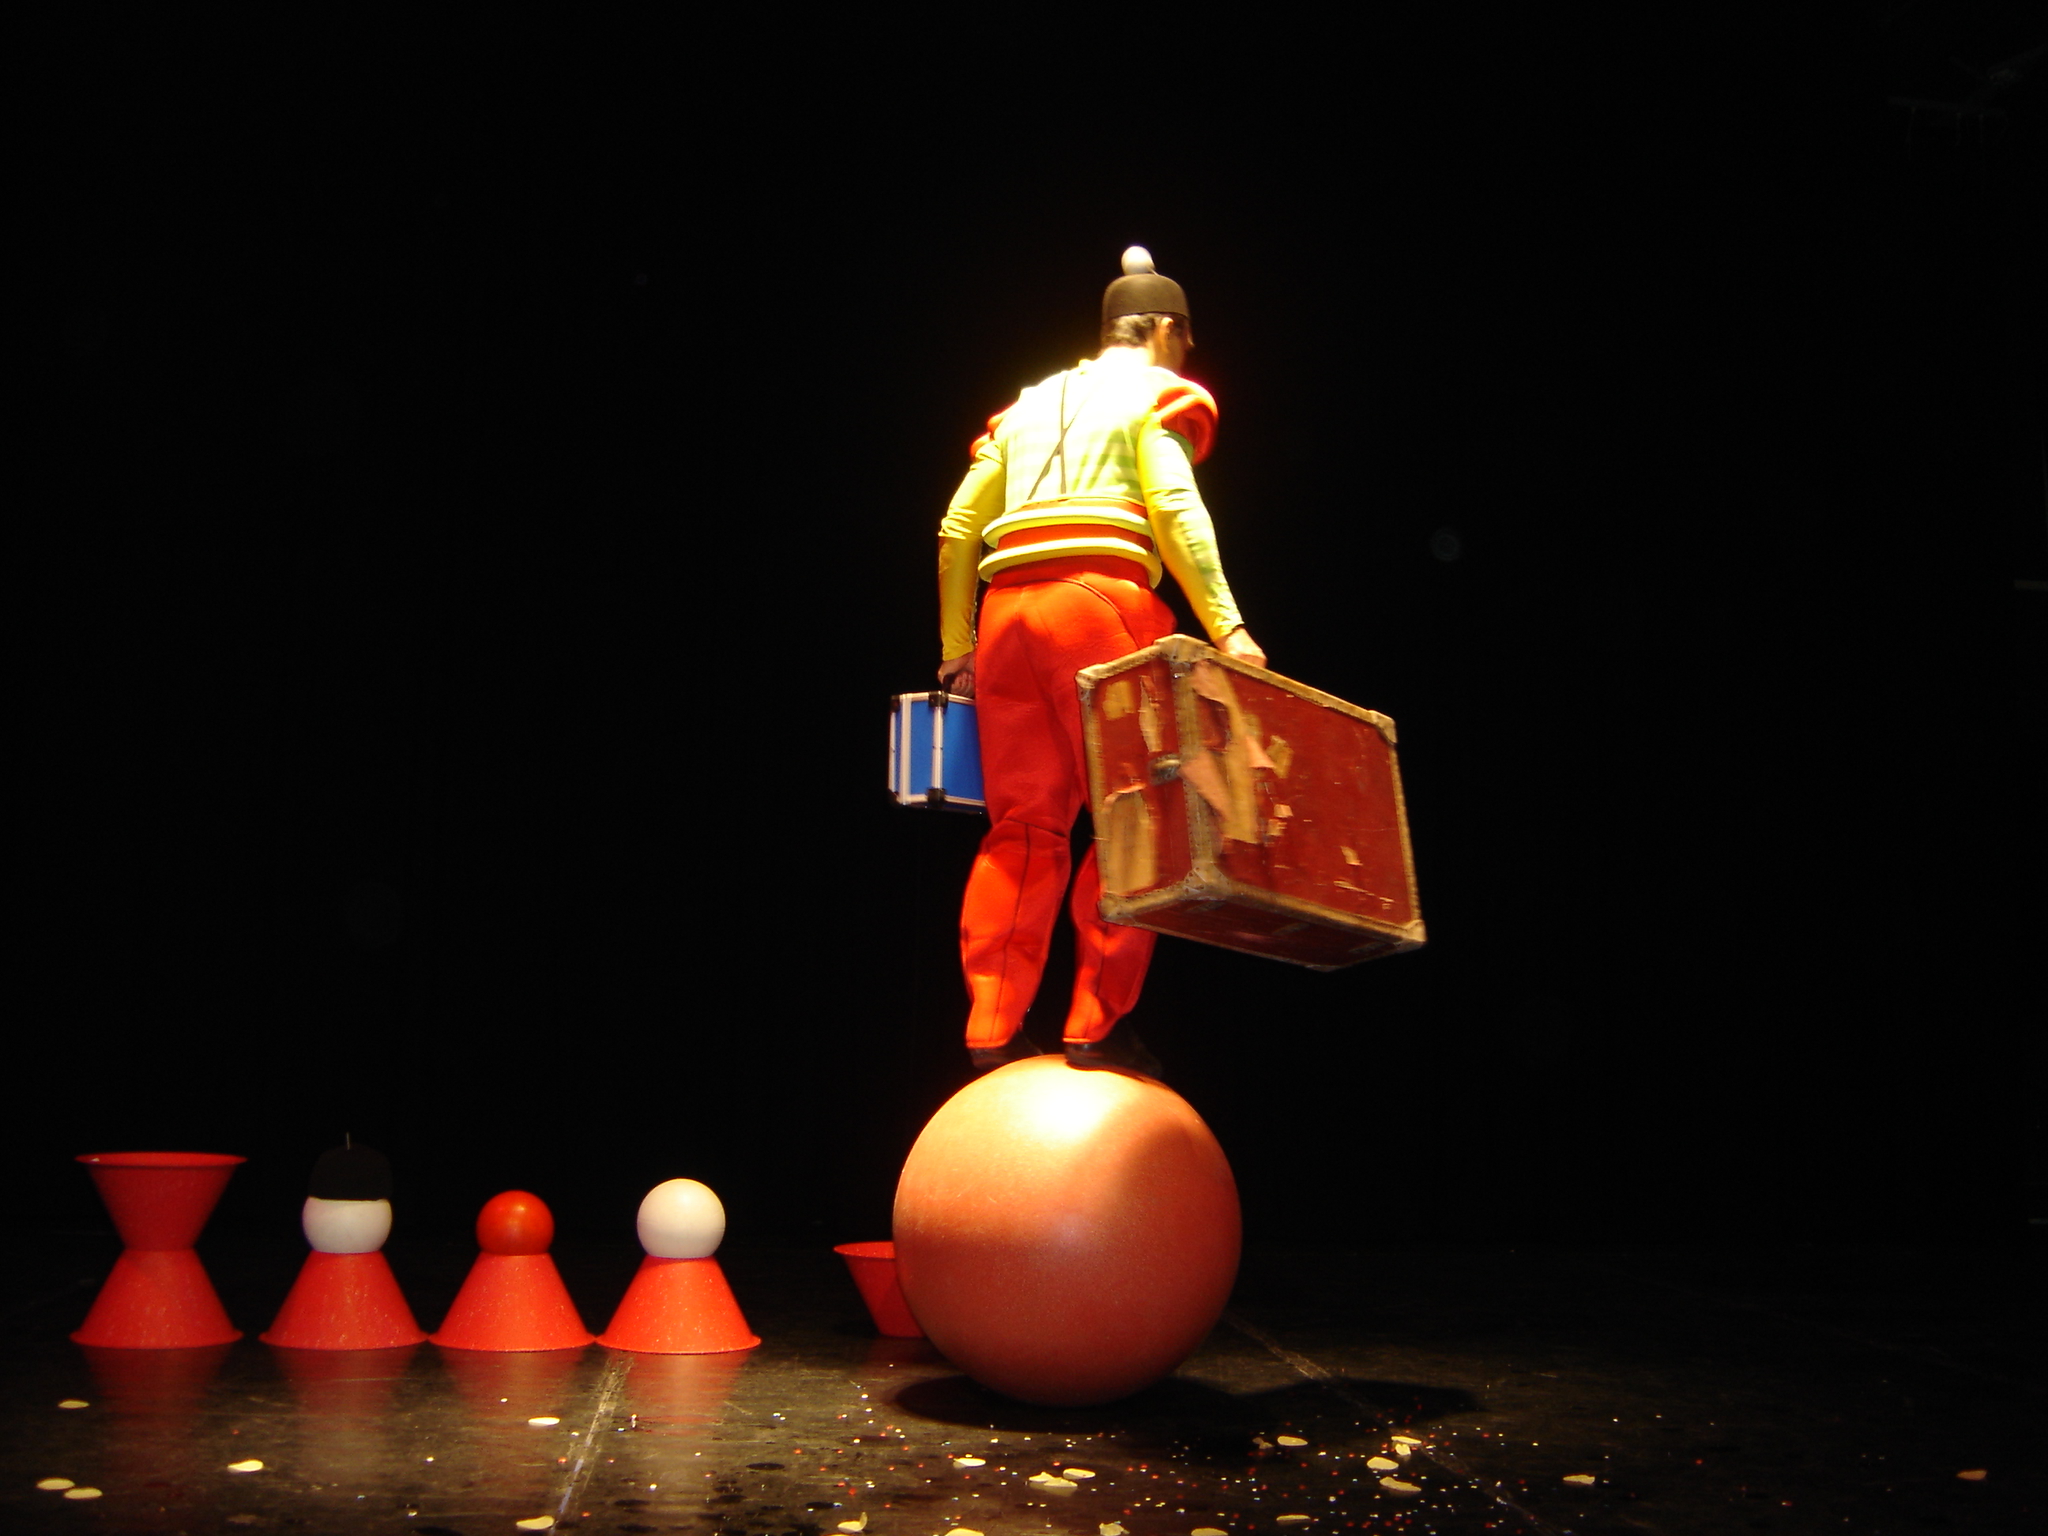 Un clown avec deux valises qui part en équilibre sur une boule Cirkonflex